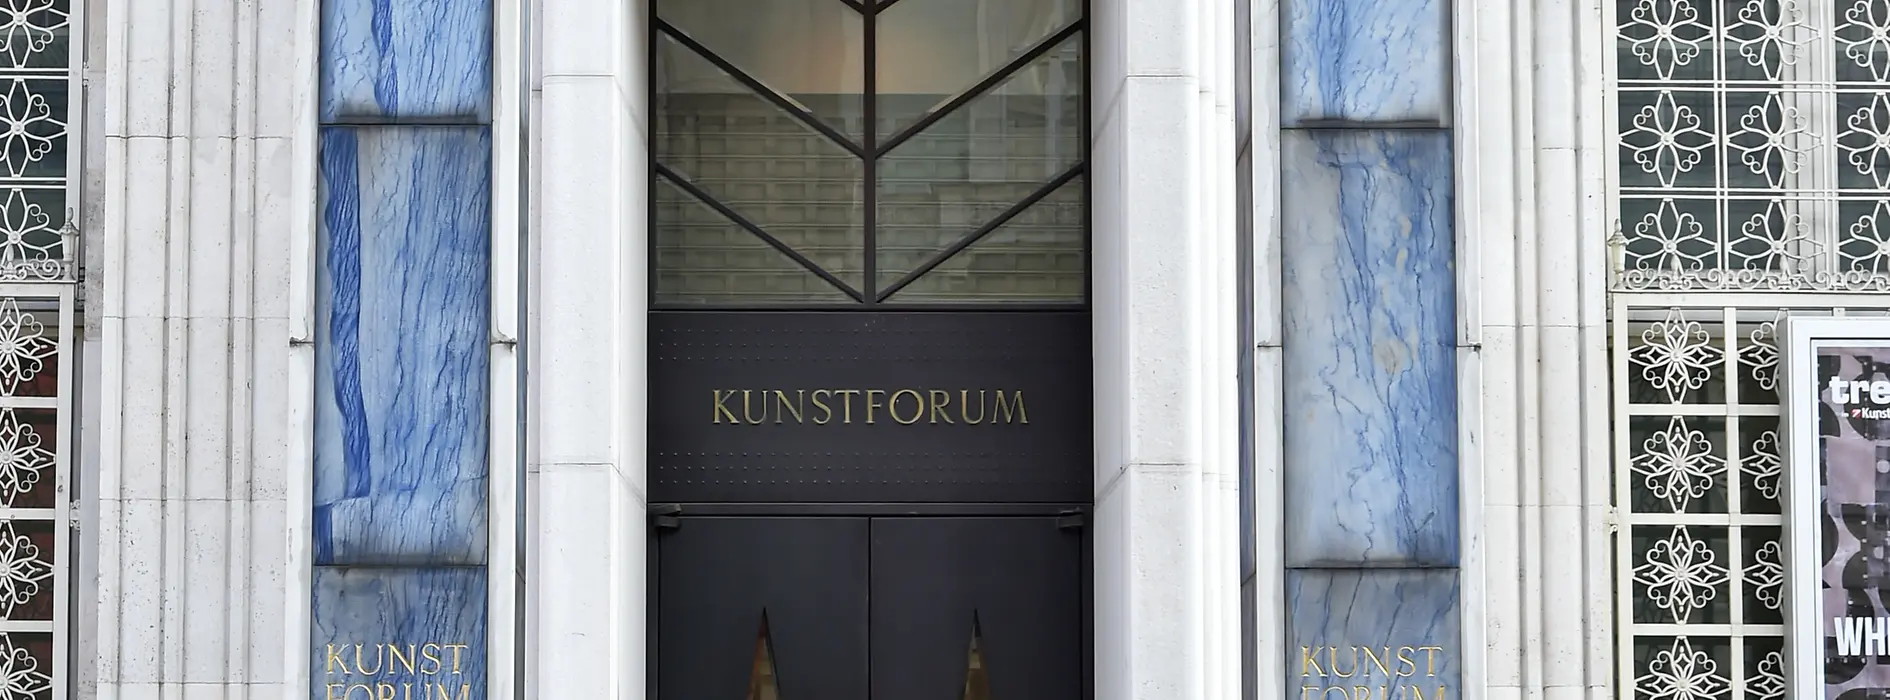 Portail du Bank Austria Kunstforum